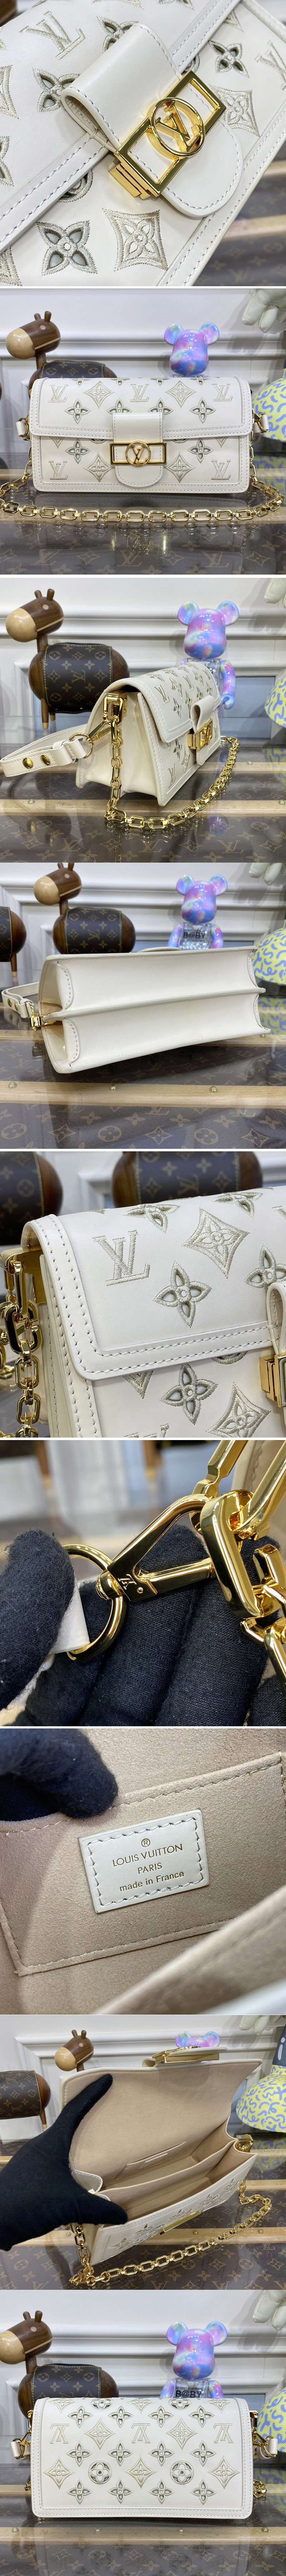 Replica Louis Vuitton Bags